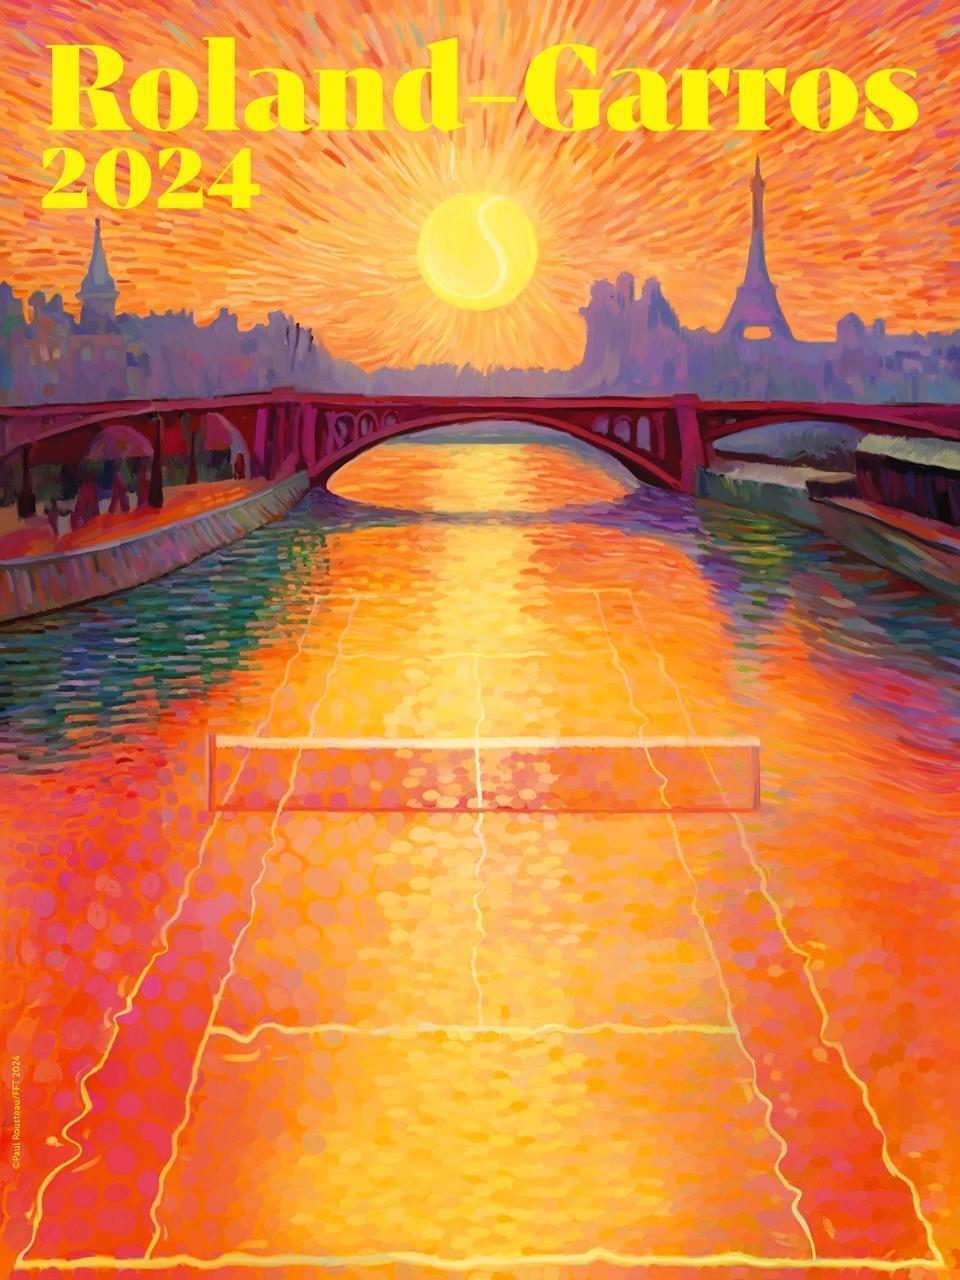 RolandGarros. L’affiche de l’édition 2024 dévoilée, avec un clin d’œil